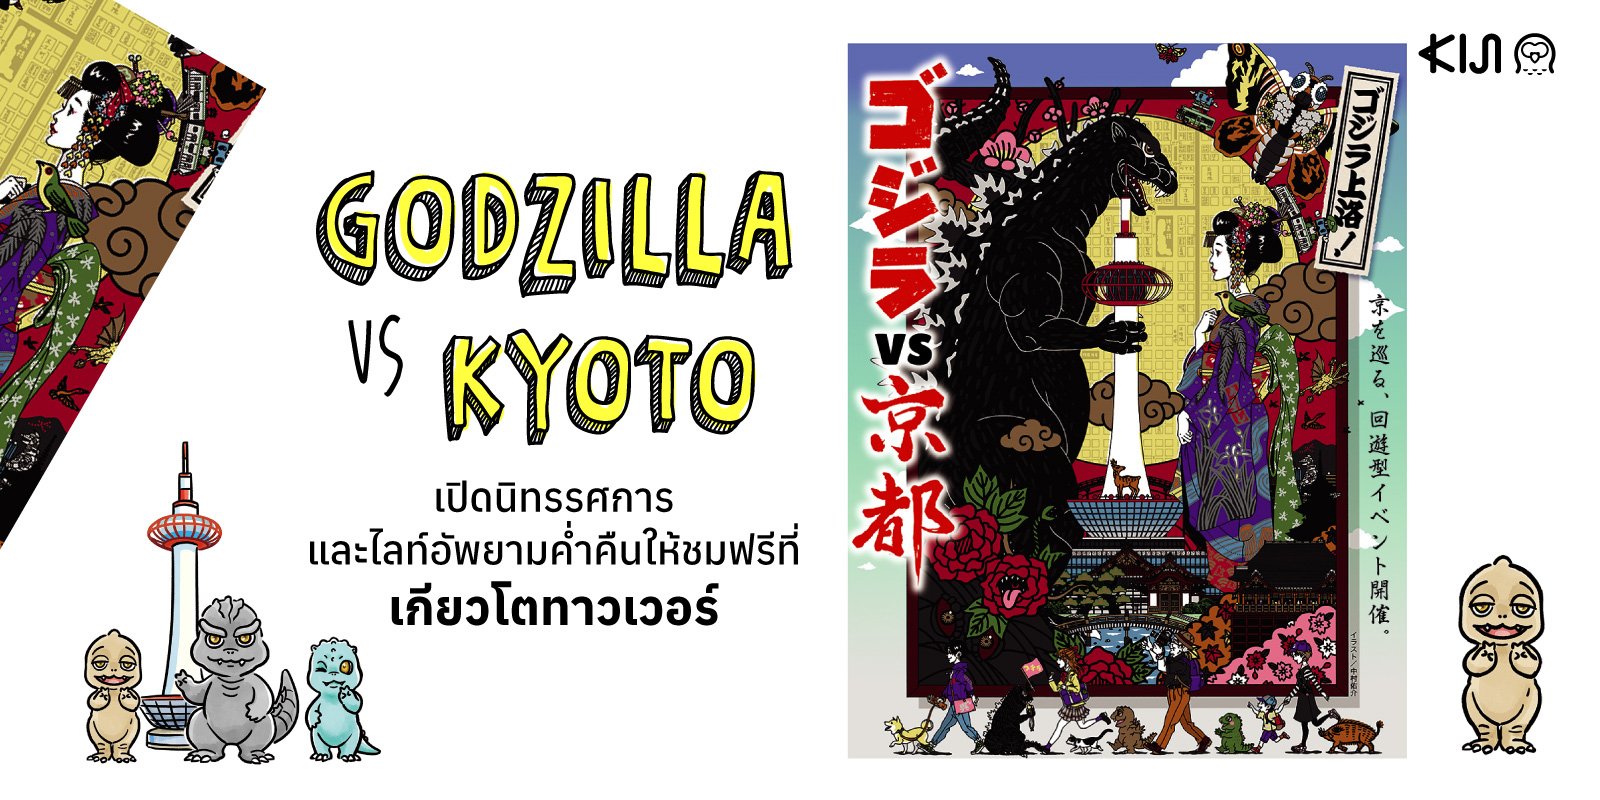 Godzilla VS Kyoto